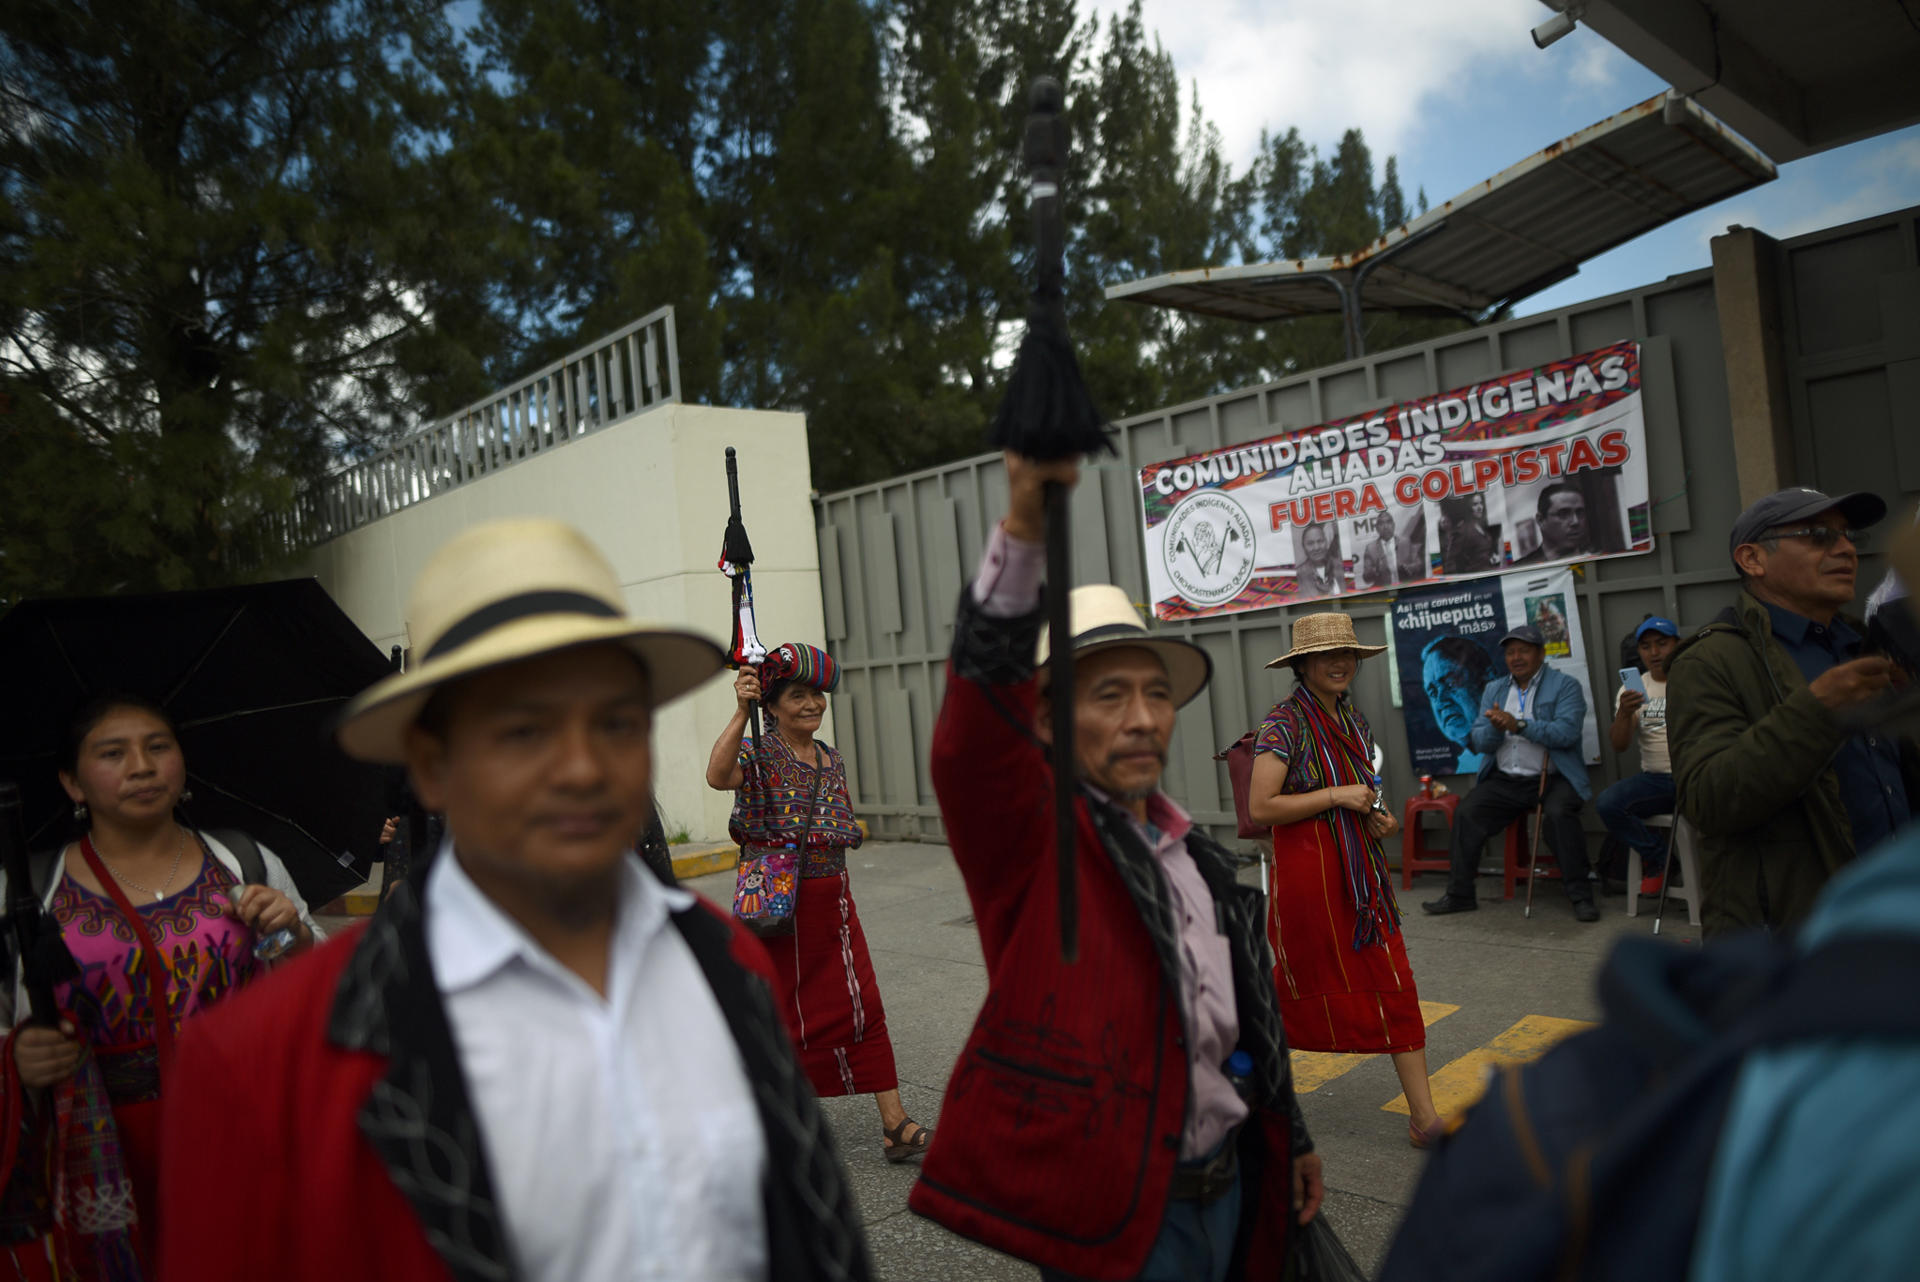 Los bloqueos de carreteras y protestas persisten en Guatemala por sexto día consecutivo